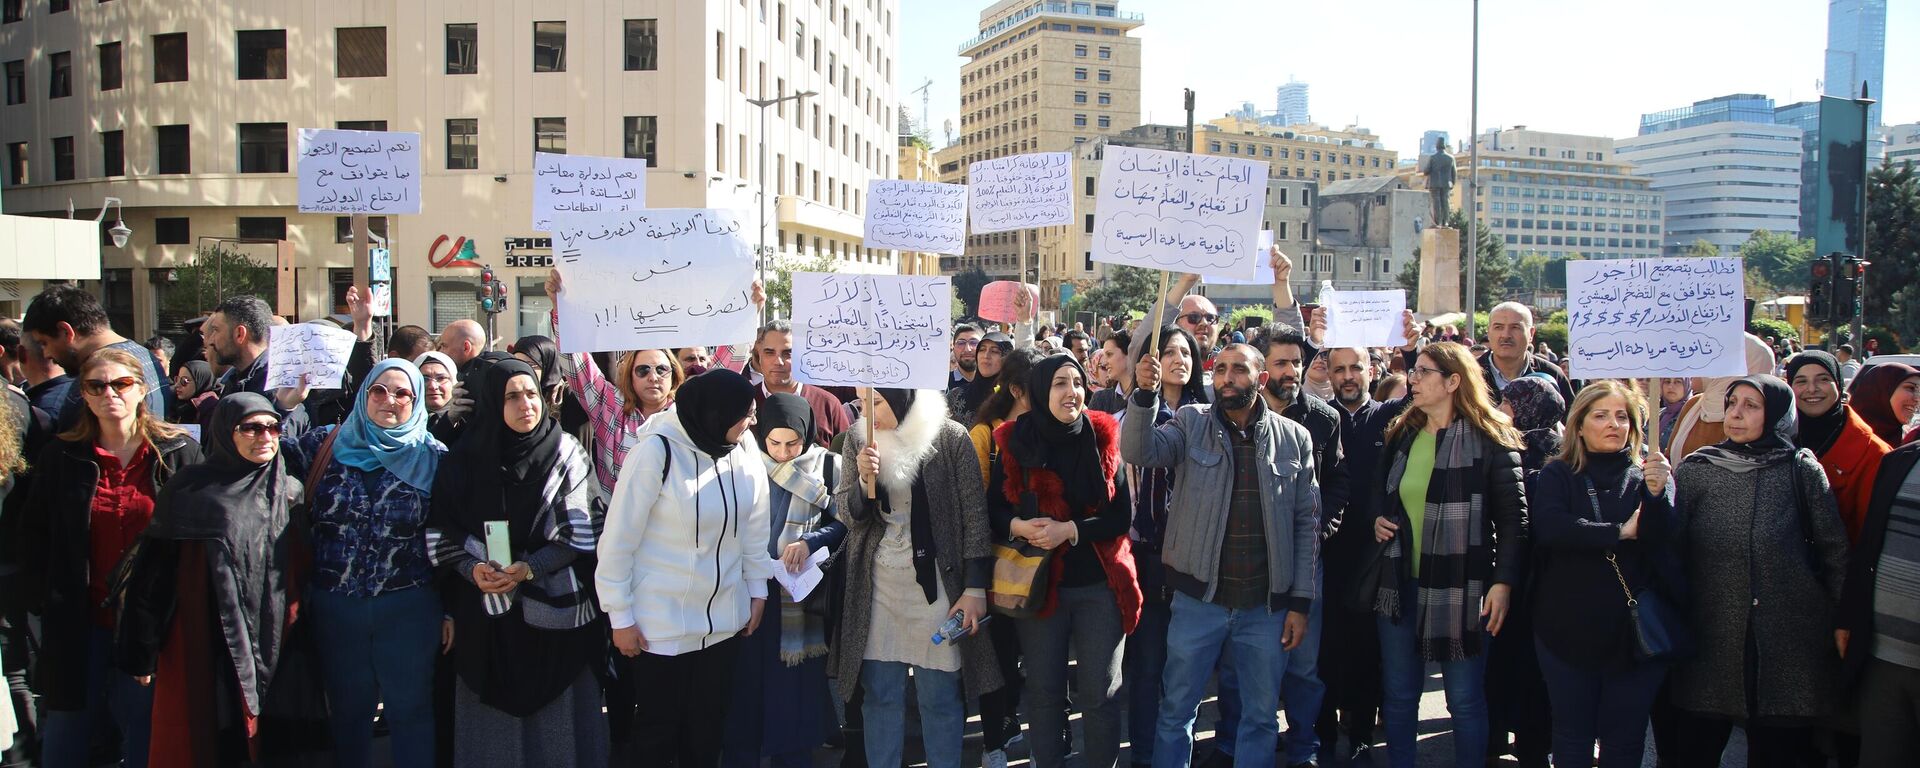 إضراب أساتذة لبنان يدخل أسبوعه الثاني وإرتفاع وتيرة الإحتجاجات لرفع الظلم وتحقيق الإنصاف وإنقاذ مصير الطلاب - سبوتنيك عربي, 1920, 18.01.2023